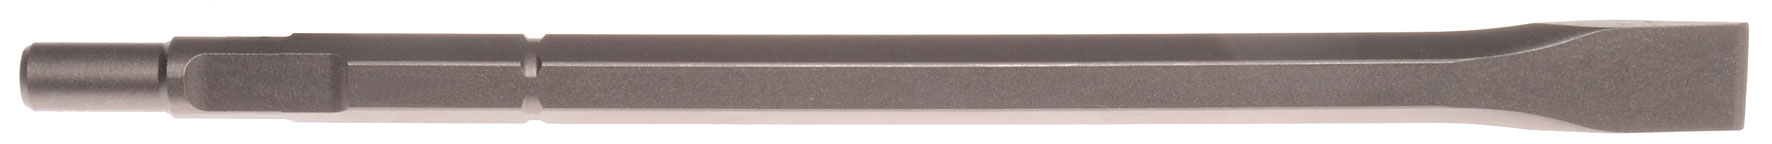 Flachmeißel Schaft 19 mm 6-kant / Bosch große Keilwelle